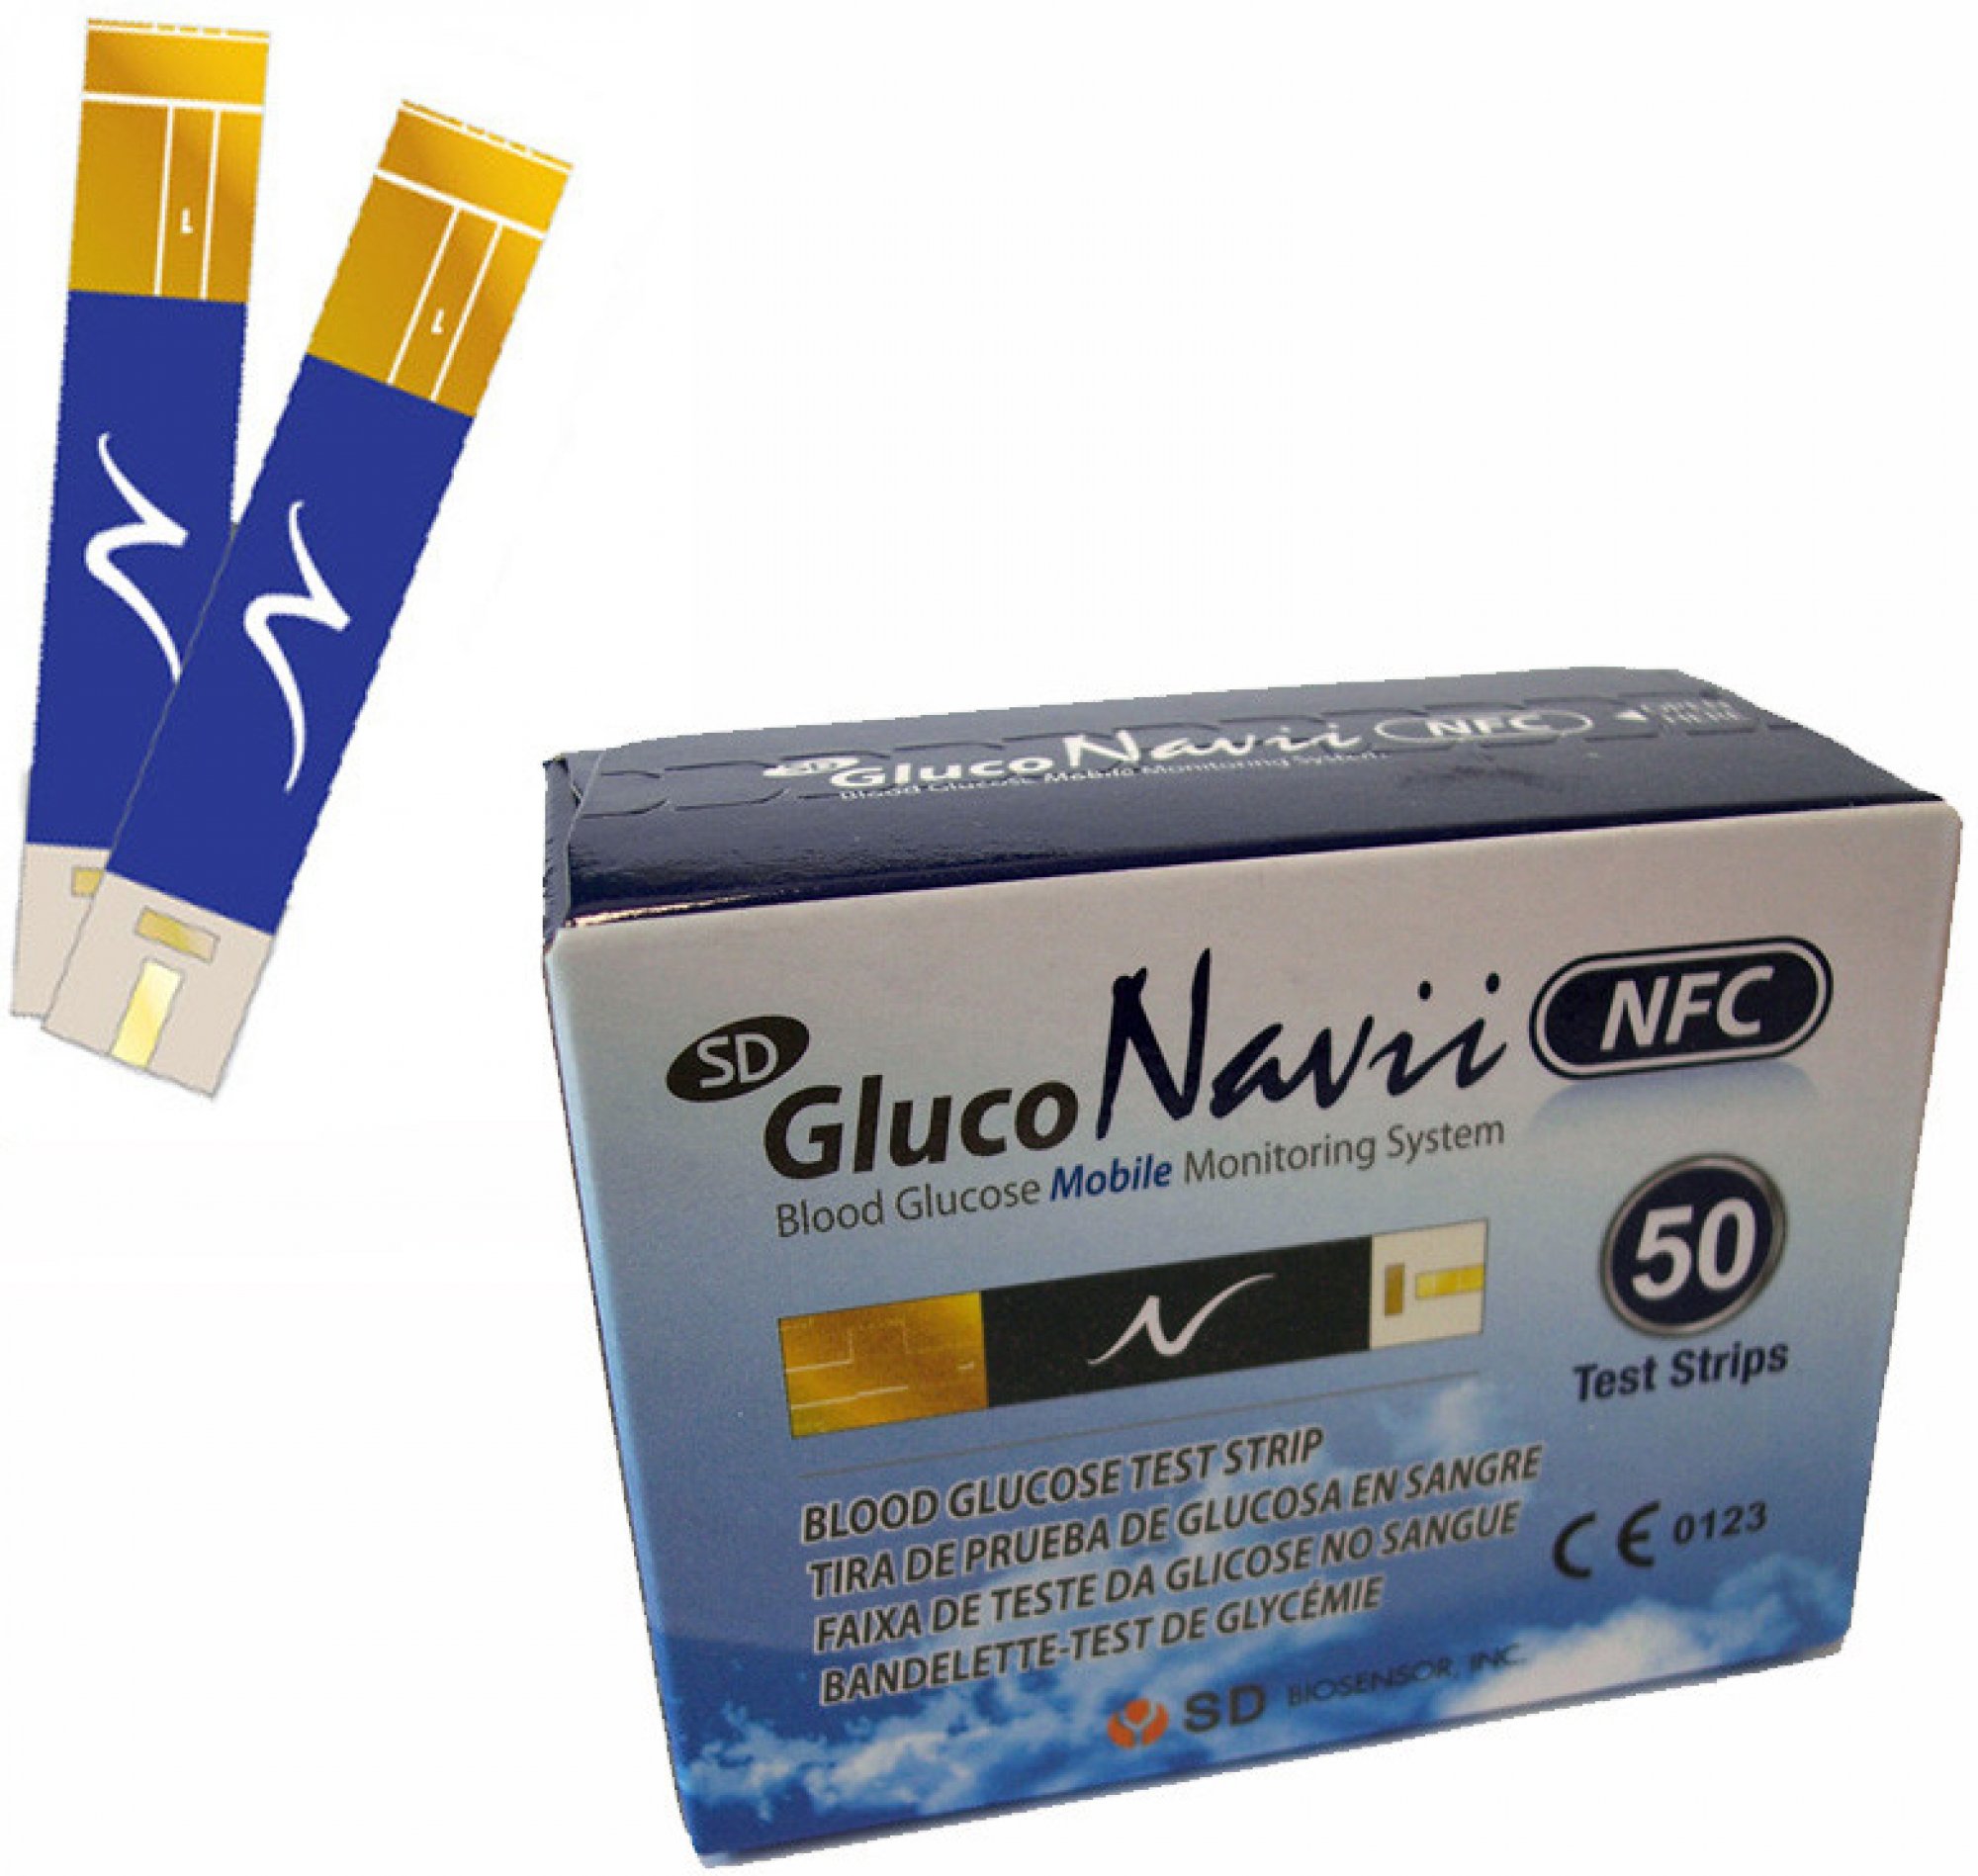 Testovací proužky pro SD GlucoNavii NFC 50ks